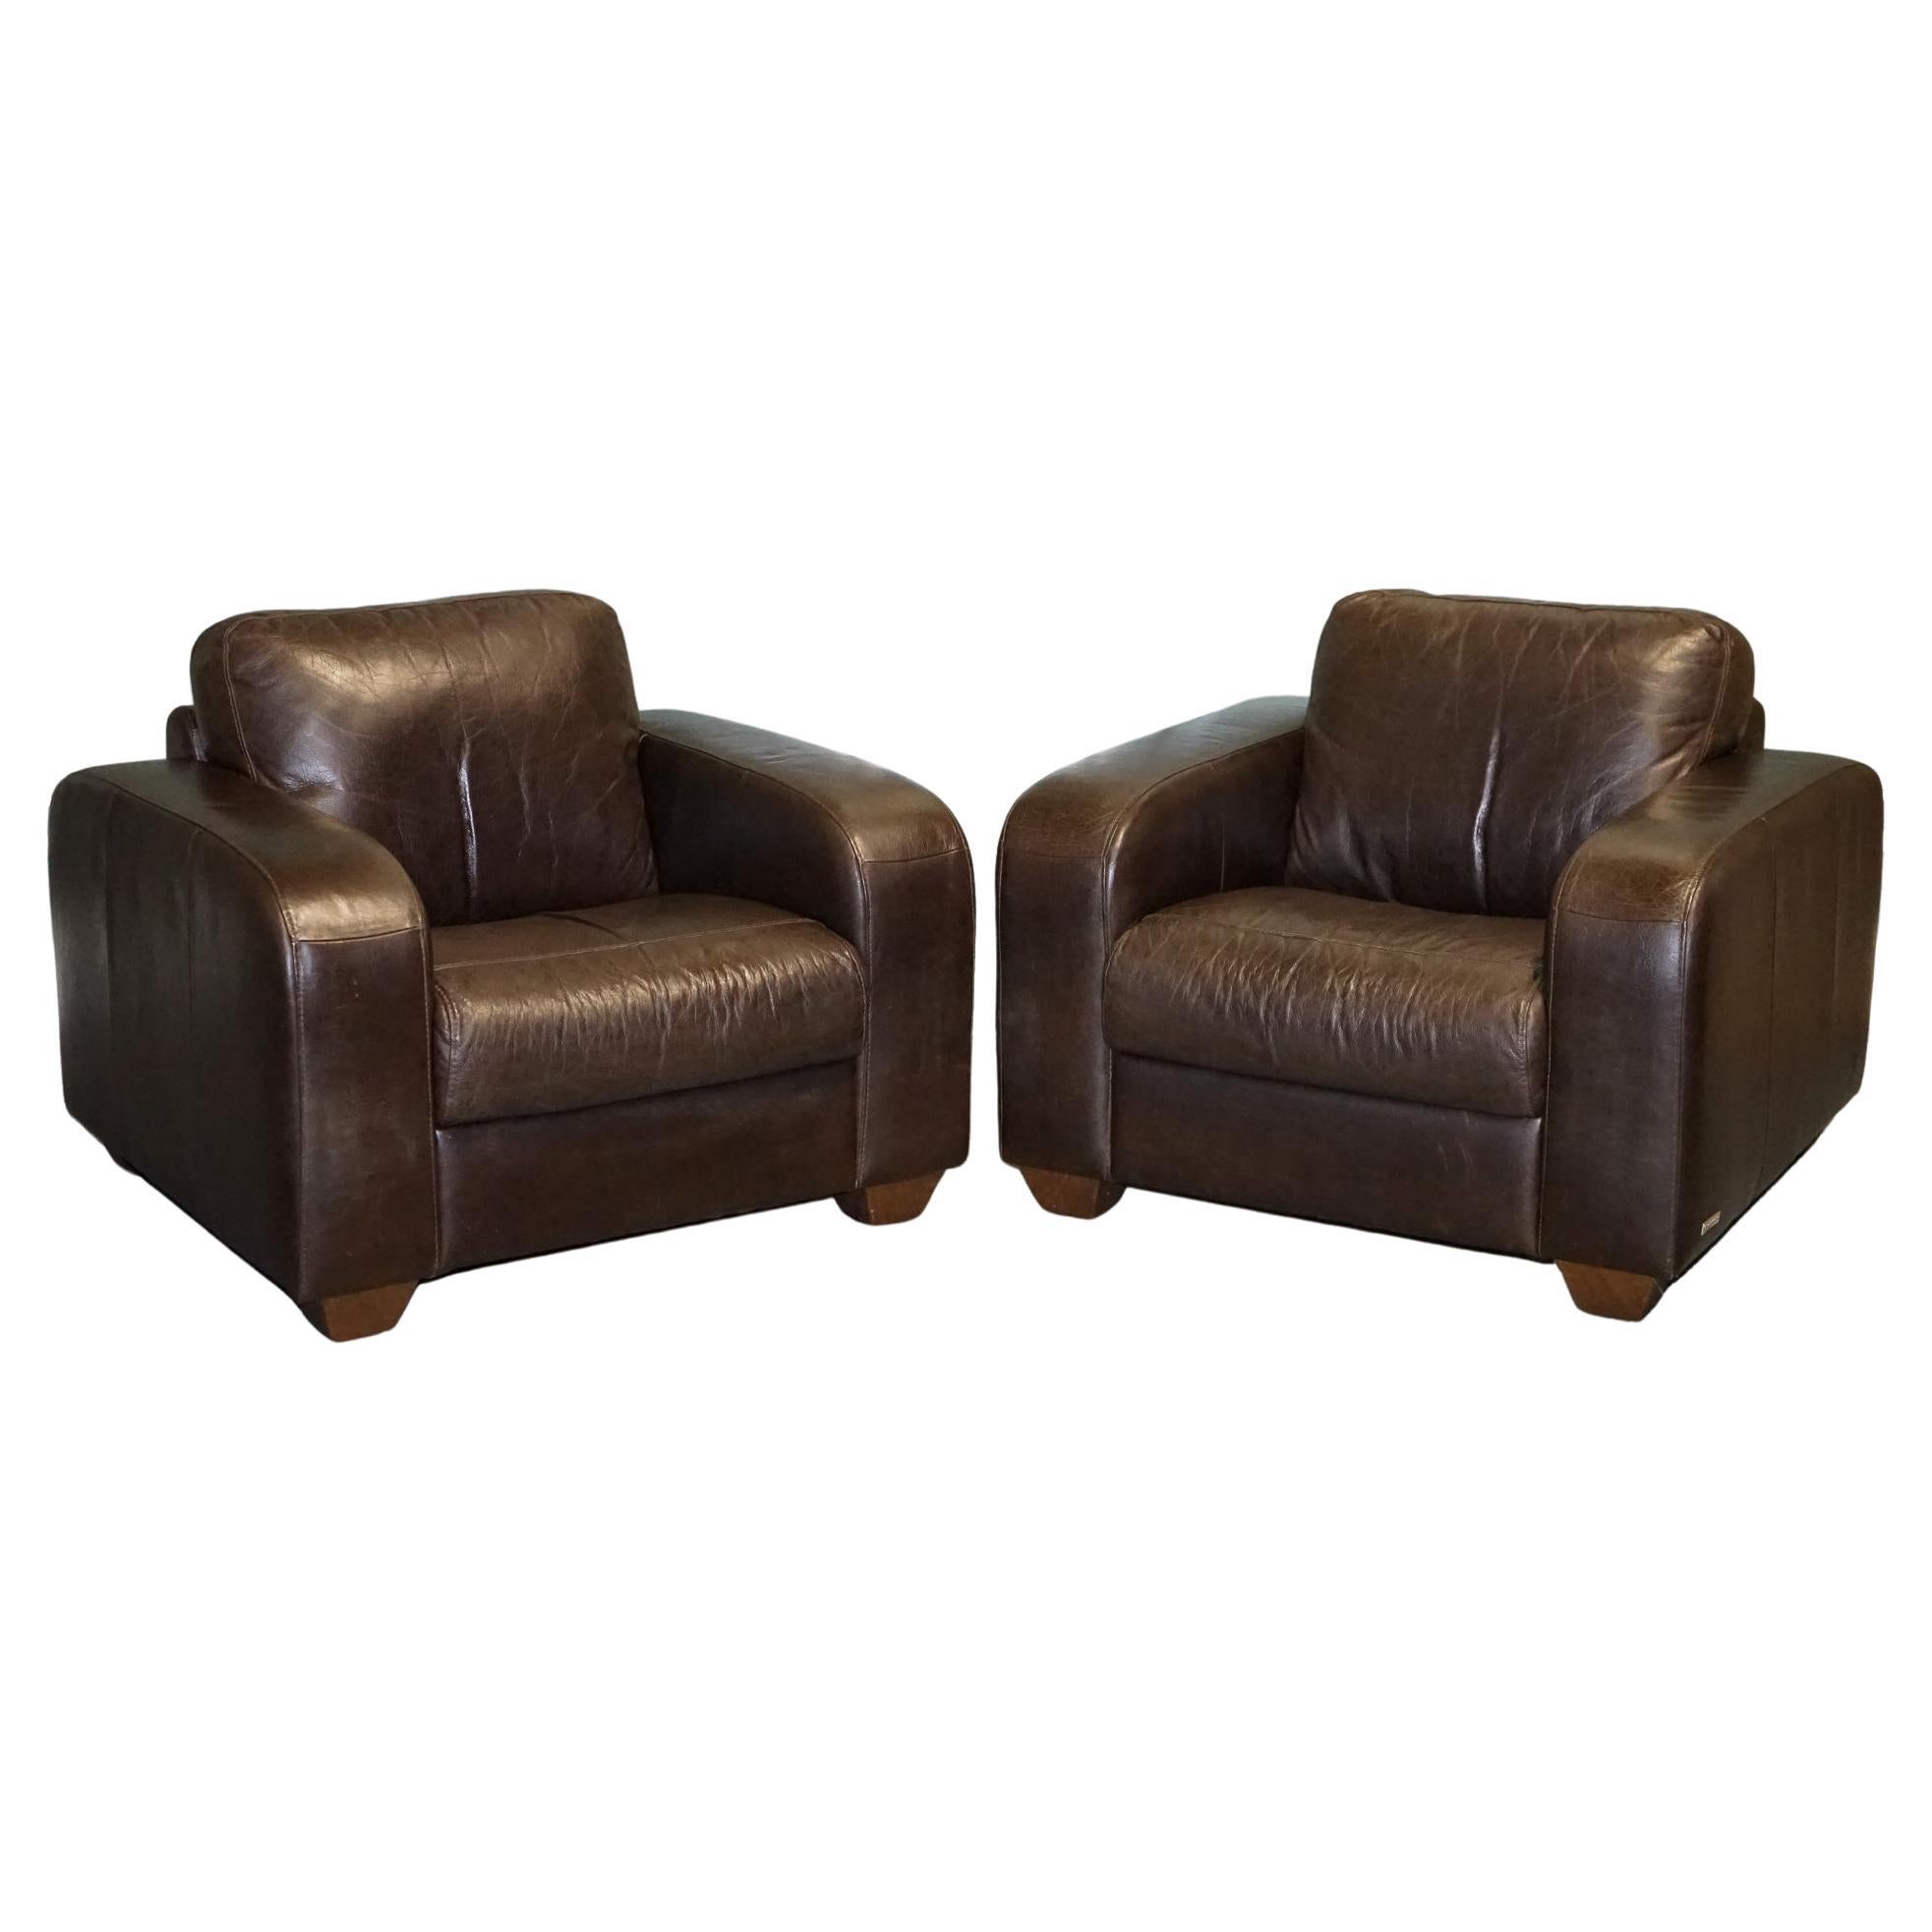 Très confortable paire de fauteuils en cuir Brown Chocolat par Sofitalia